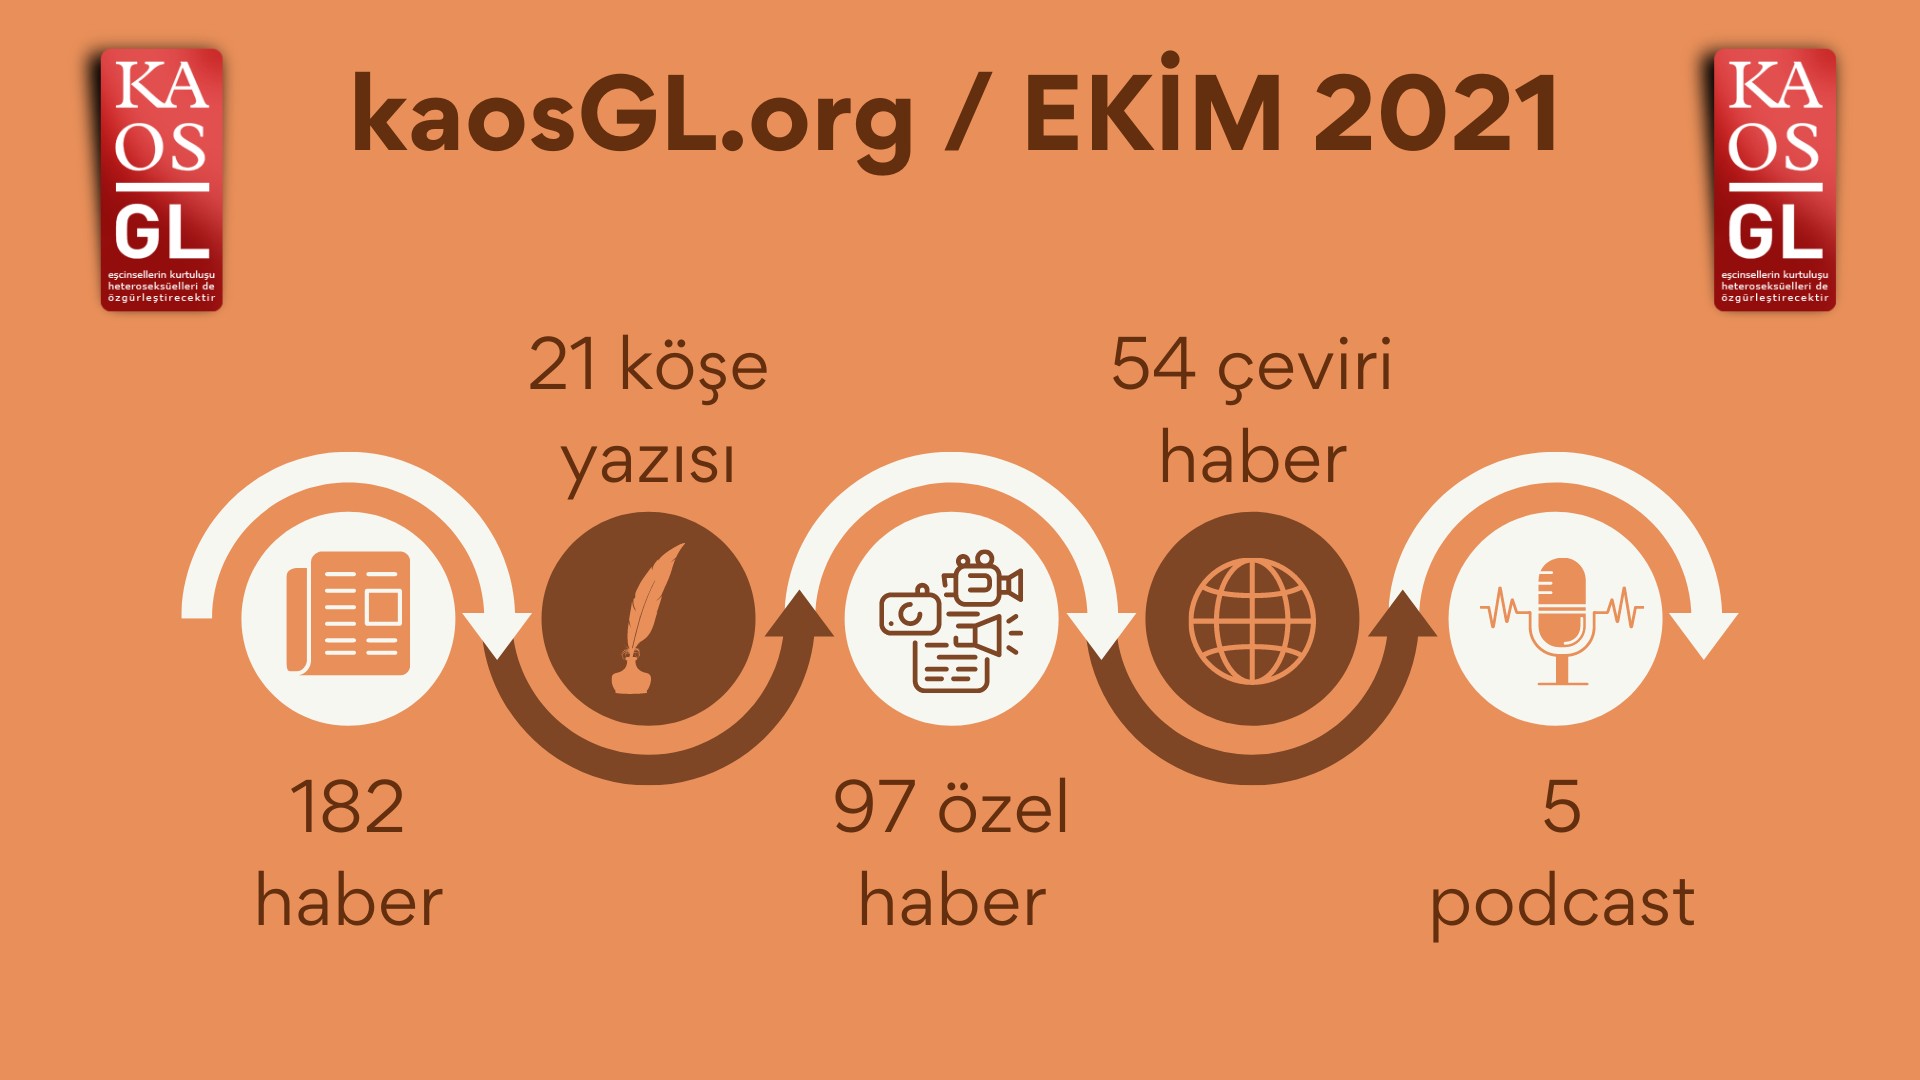 KaosGL.org, Ekim 2021’de ne yaptı? | Kaos GL - LGBTİ+ Haber Portalı